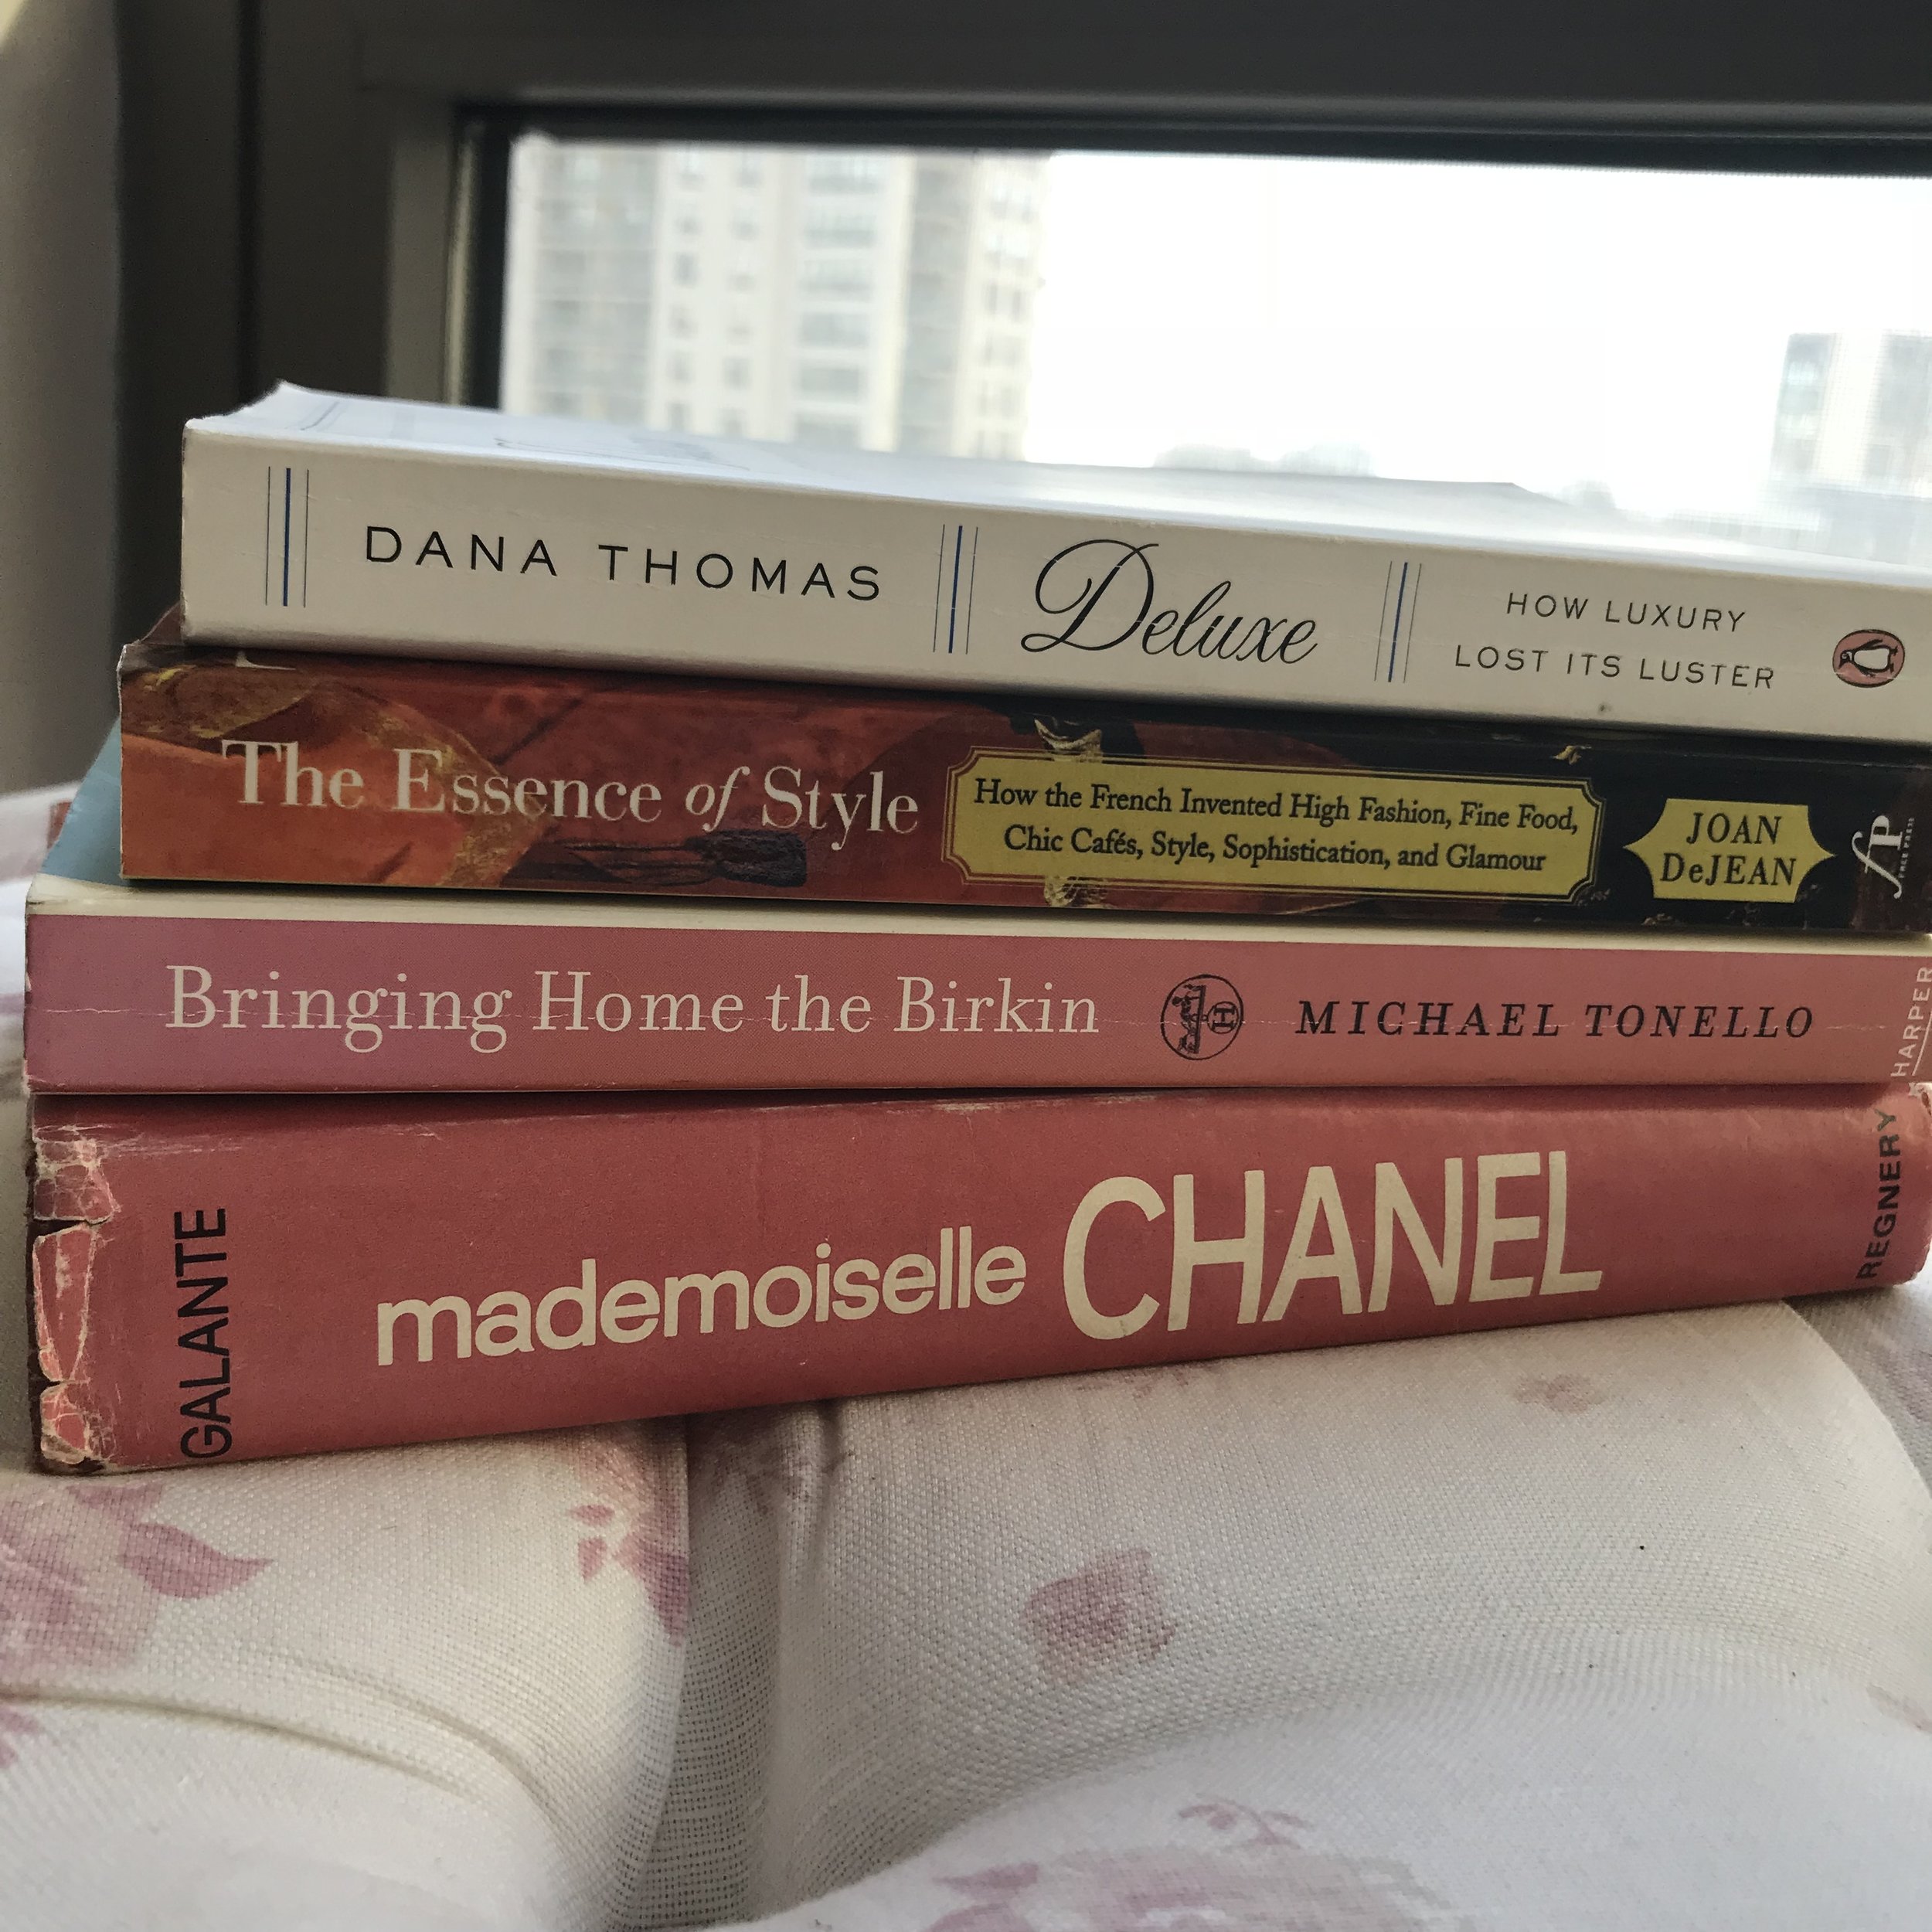 Mademoiselle Chanel: A Novel